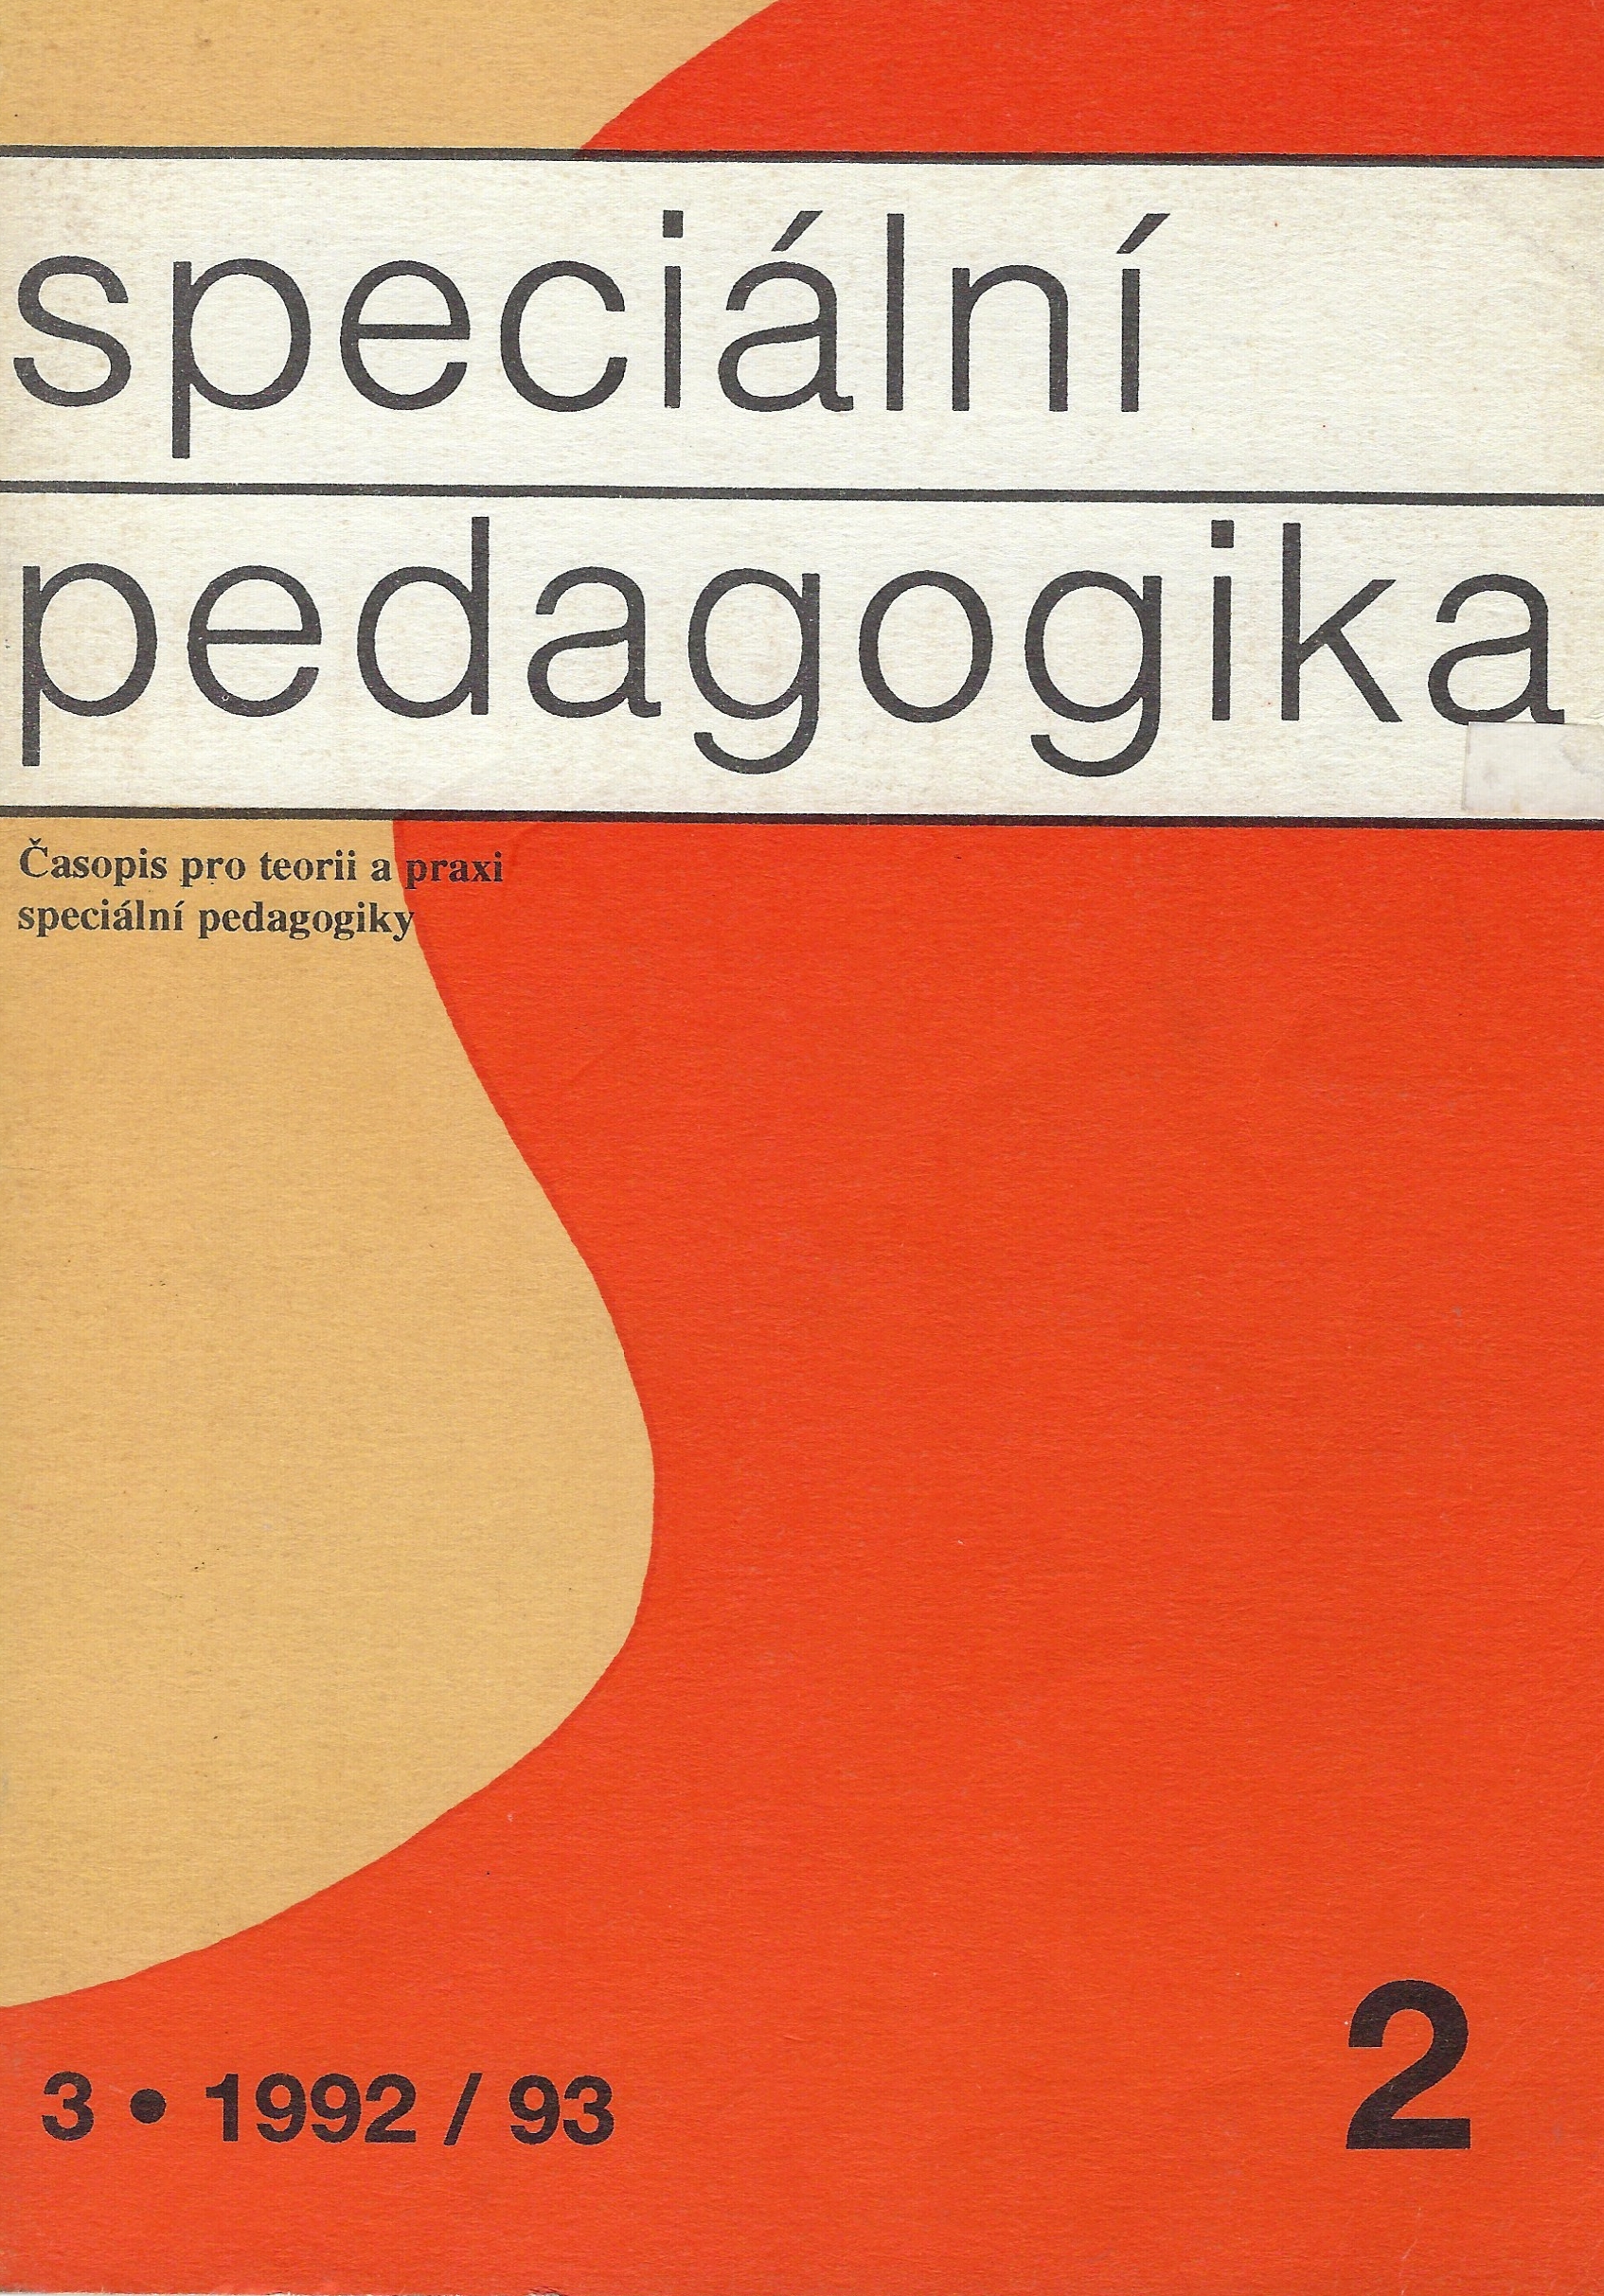 Speciální pedagogika 2-1992/93